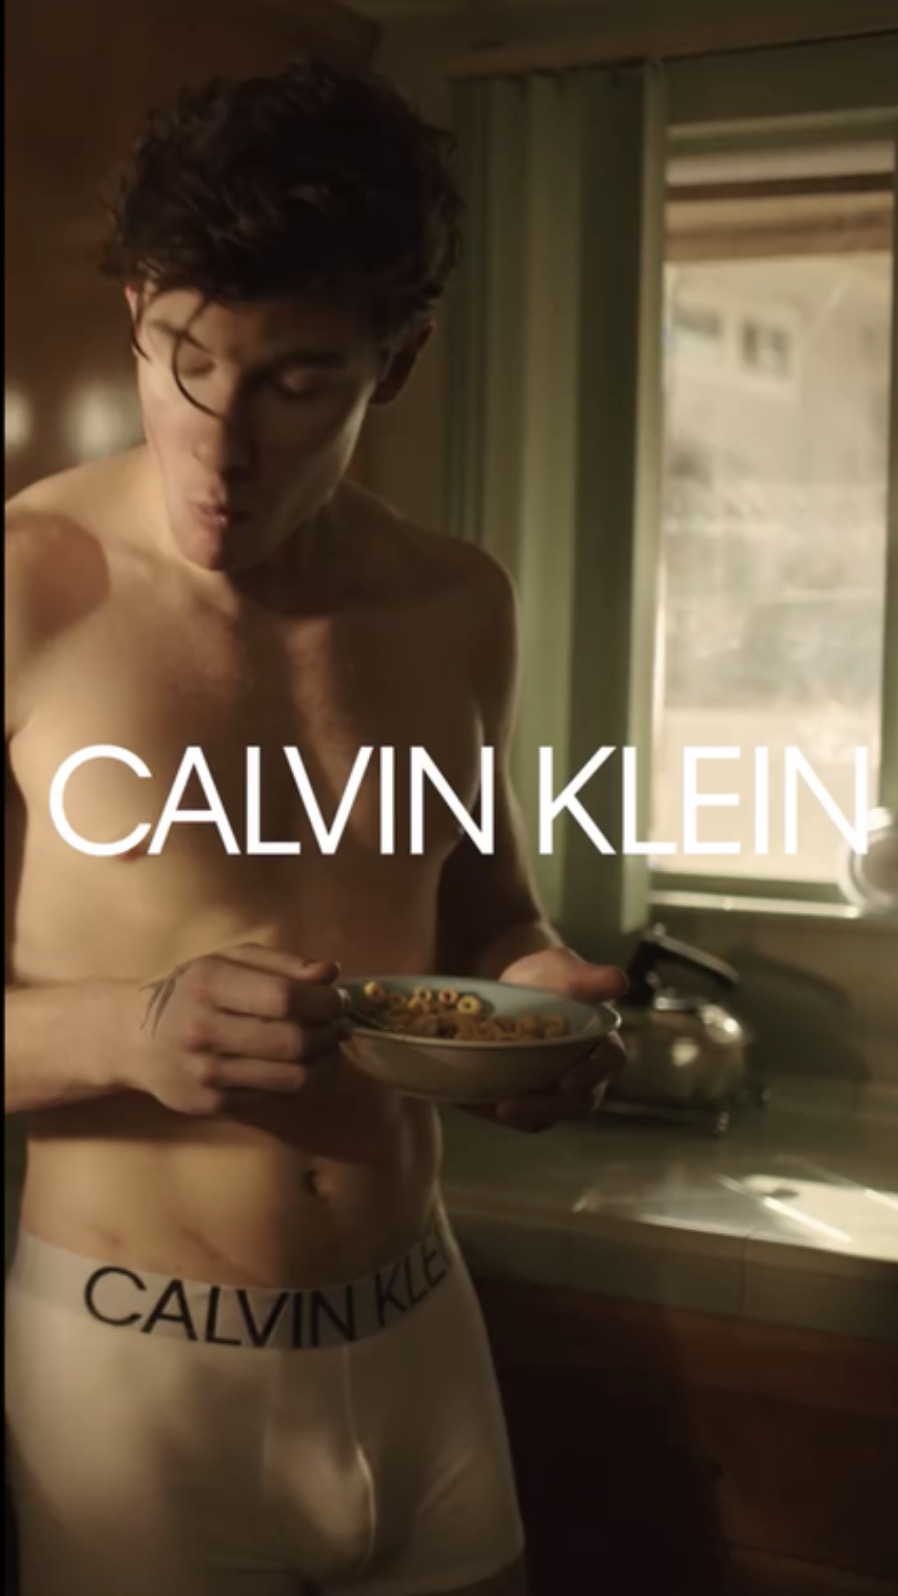 Il servizio fotografico di Calvin Klein realizzato con Shawn Mendes ha lett...